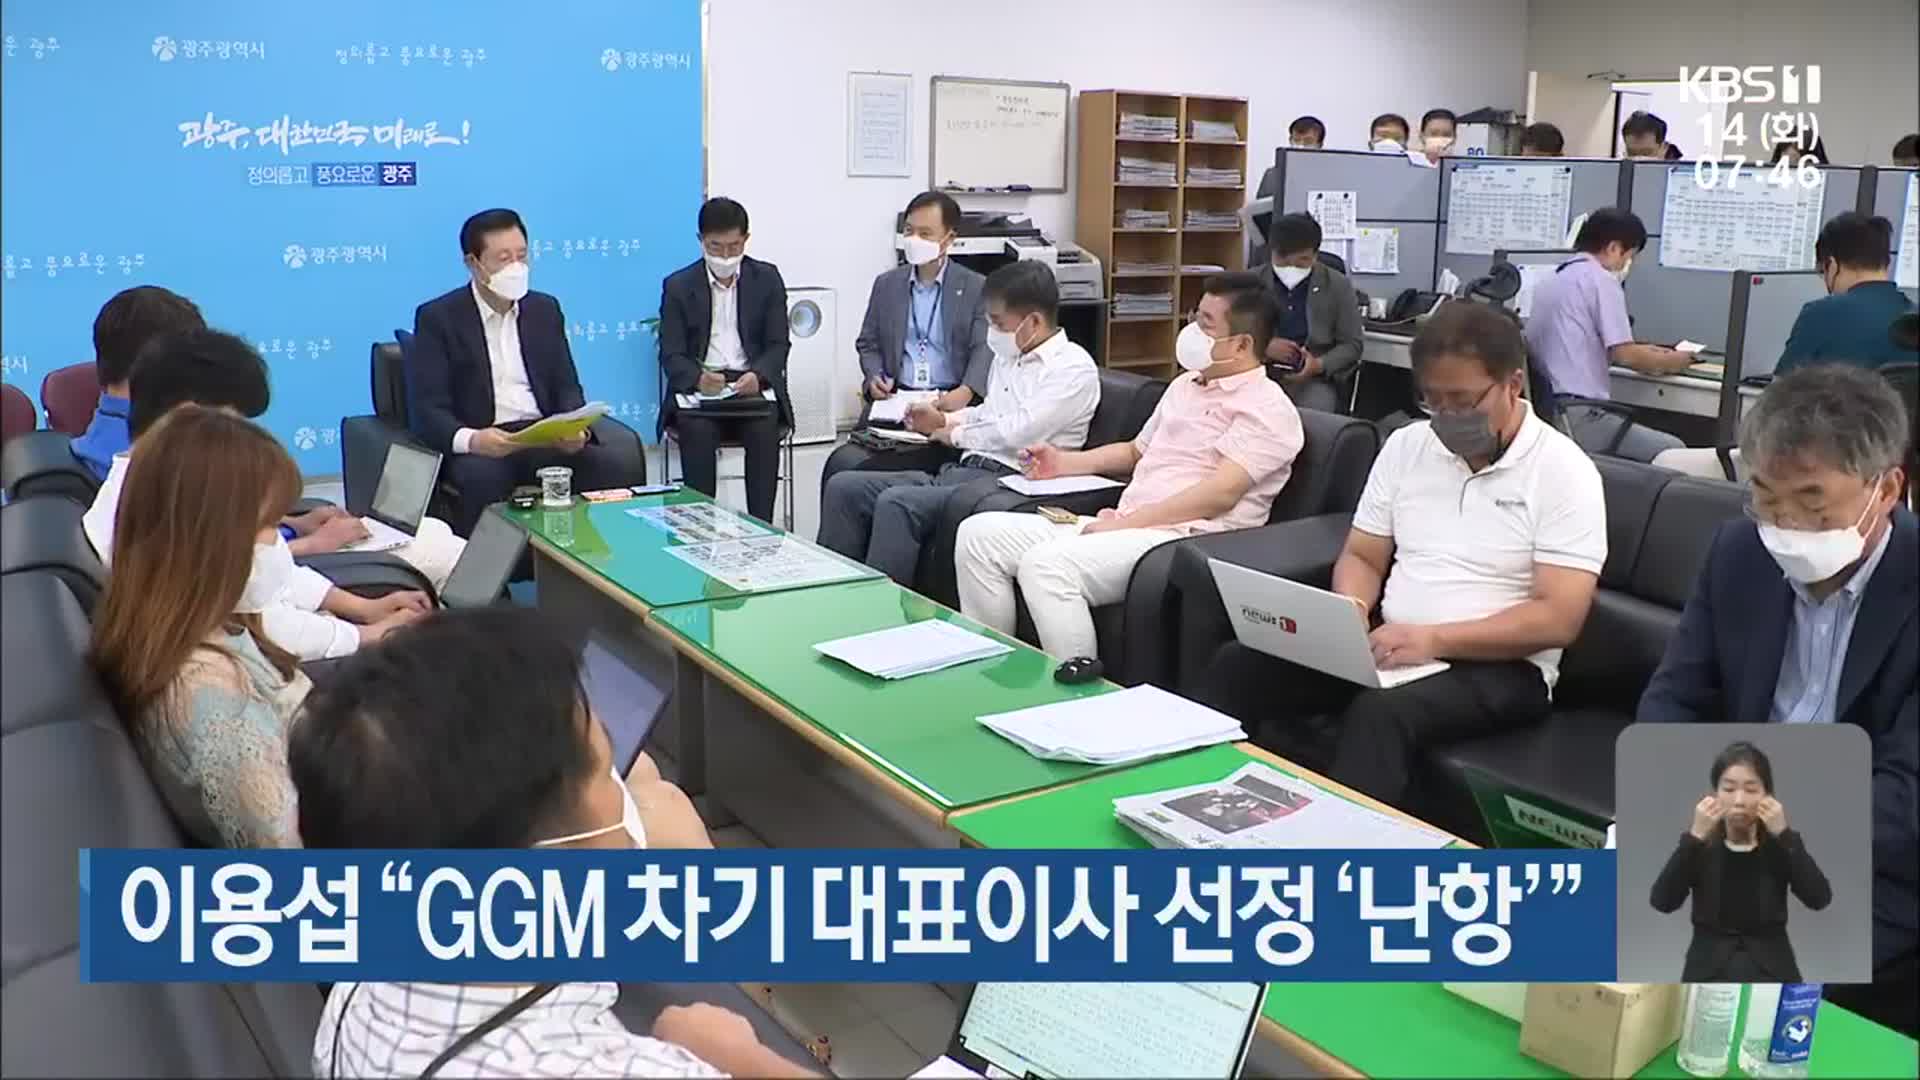 이용섭 “GGM 차기 대표이사 선정 ‘난항’”